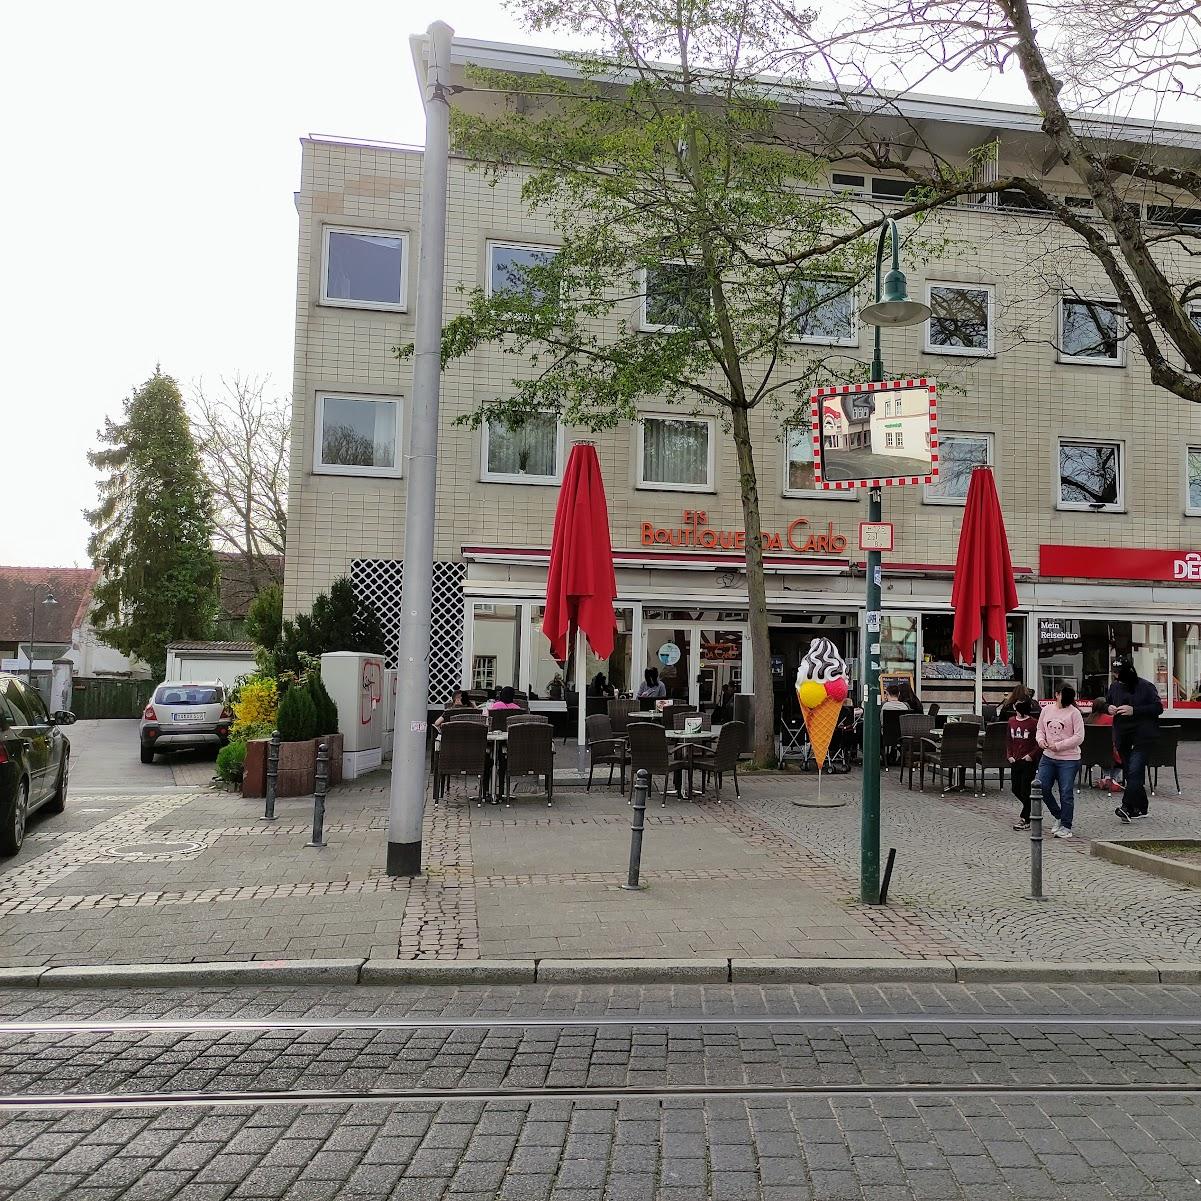 Restaurant "Eisboutique da Carlo" in Darmstadt